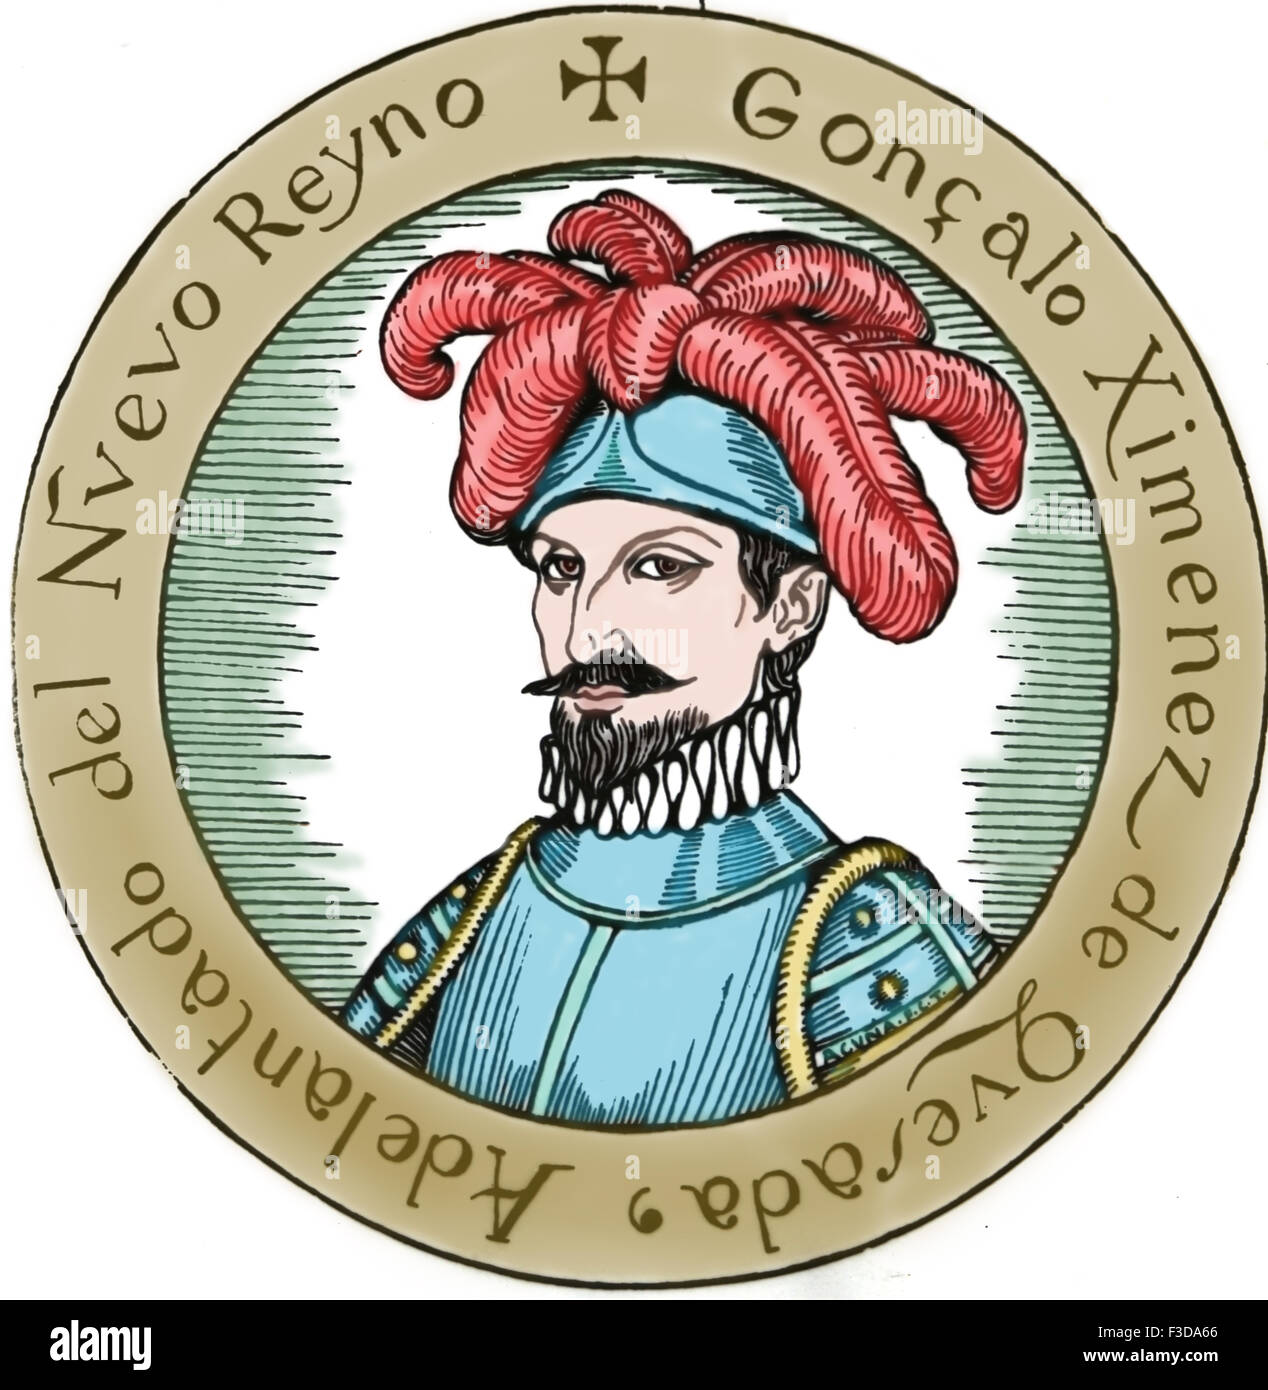 Gonzalo Jimenez de Quesada (1509-1579). L'explorateur et conquistador espagnol en Colombie. Portrait. Gravure, 19ème siècle. La couleur. Banque D'Images